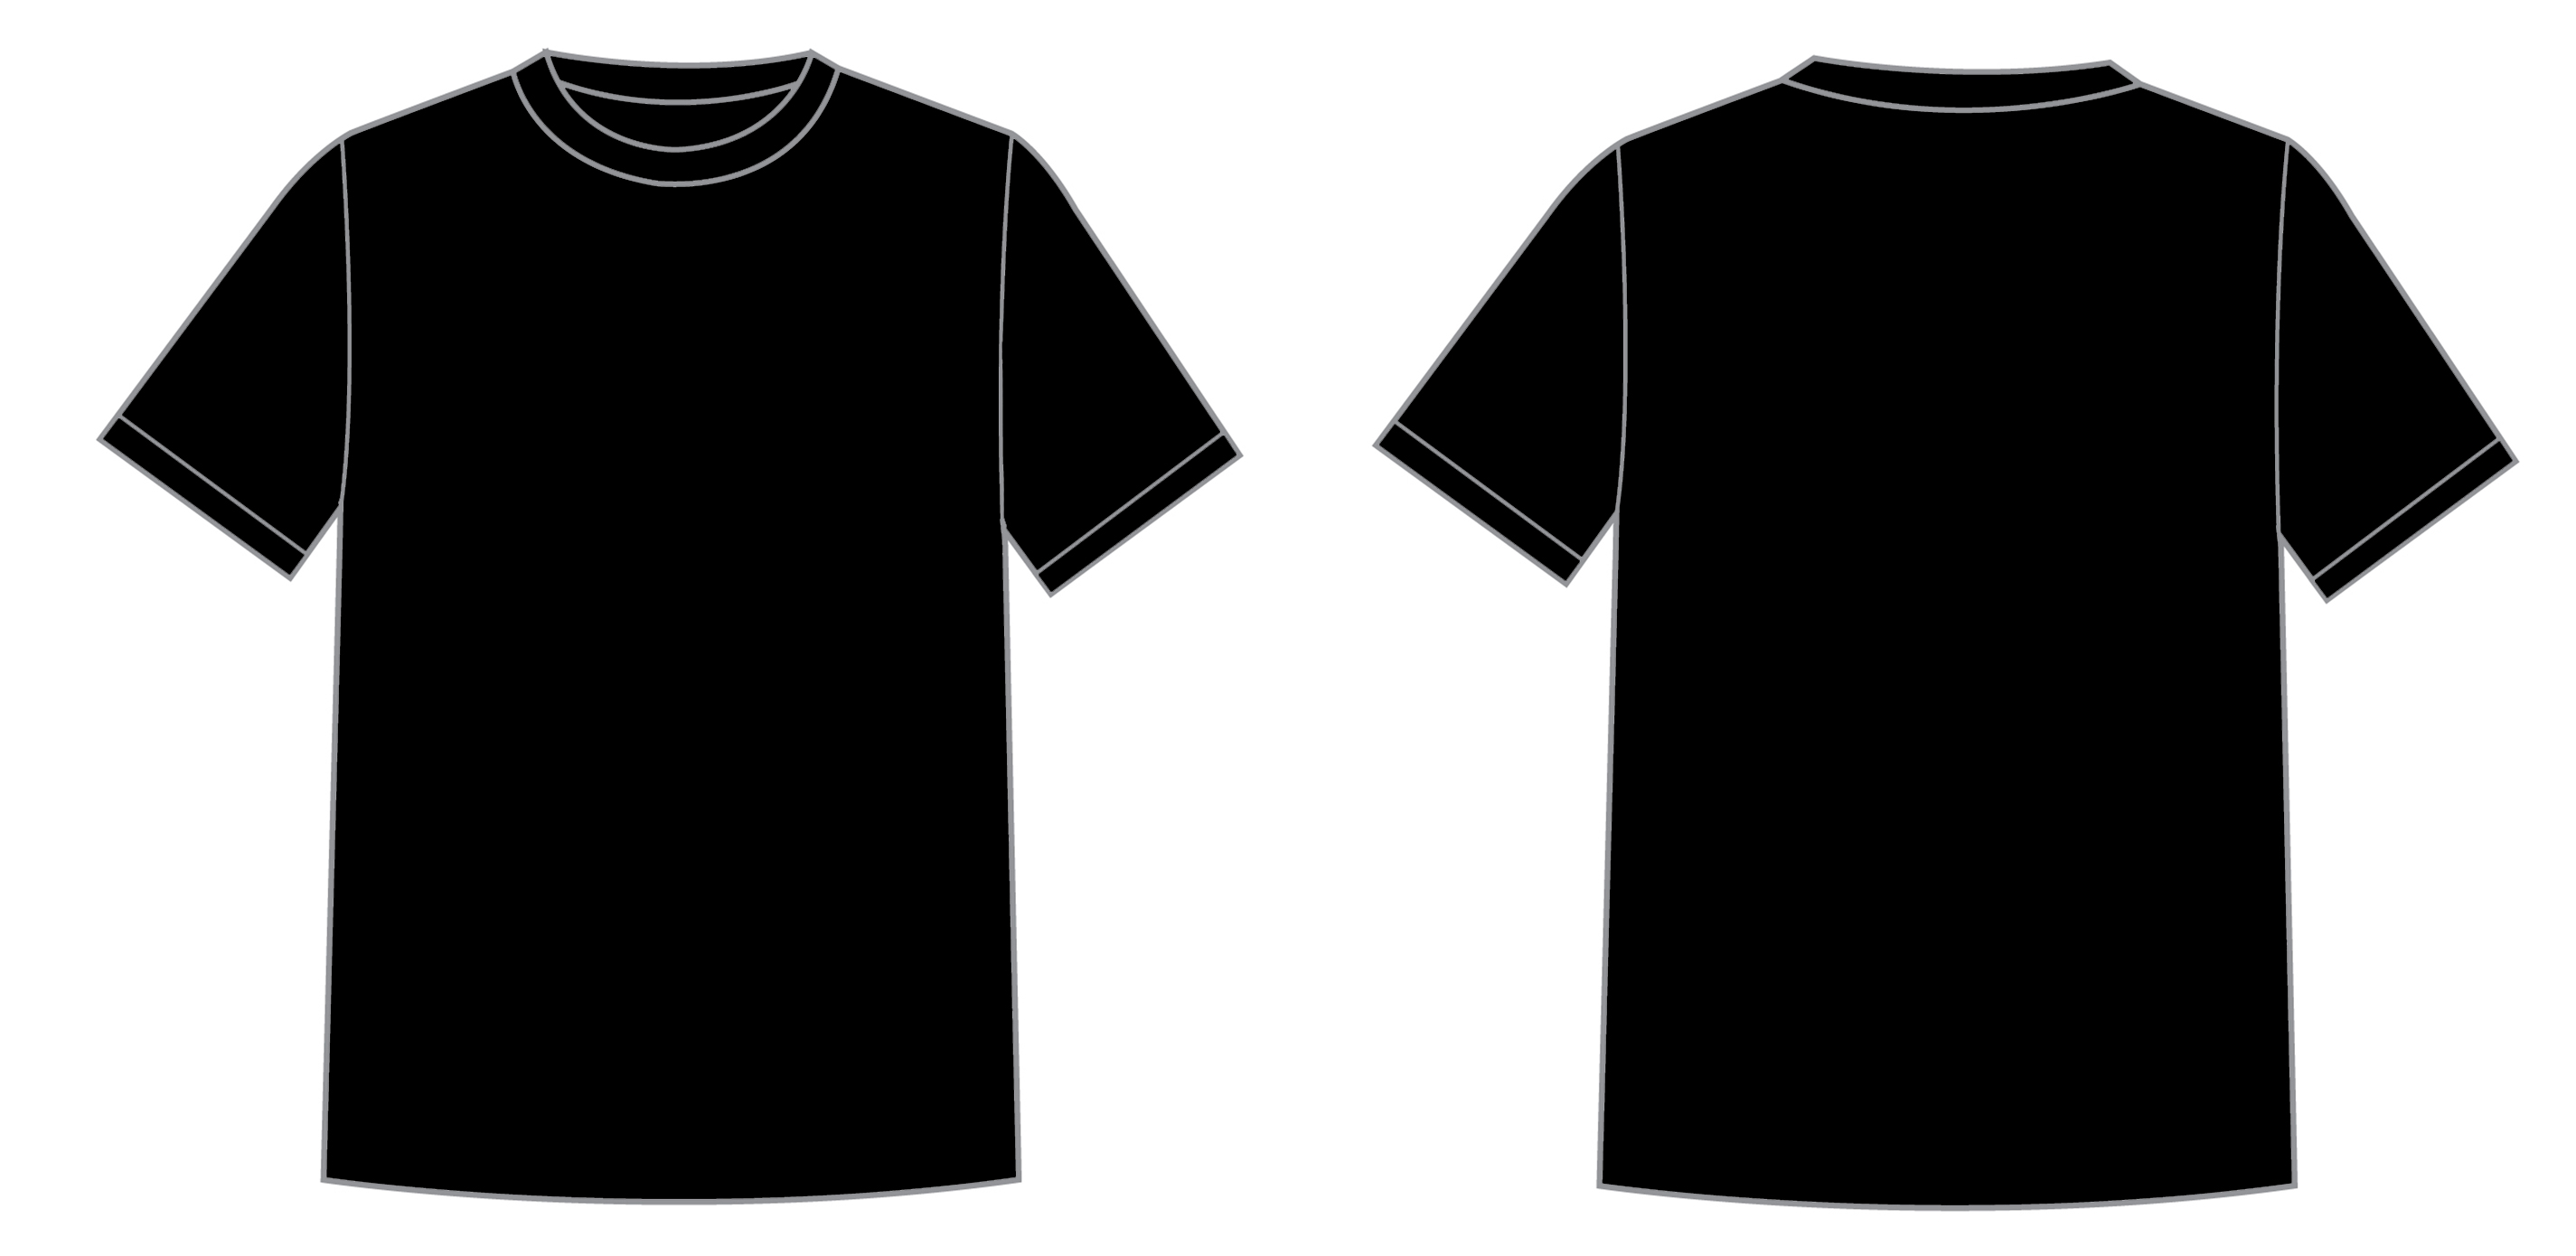 Black T Shirt Template New Calendar Template Site UdNNQz90 ...